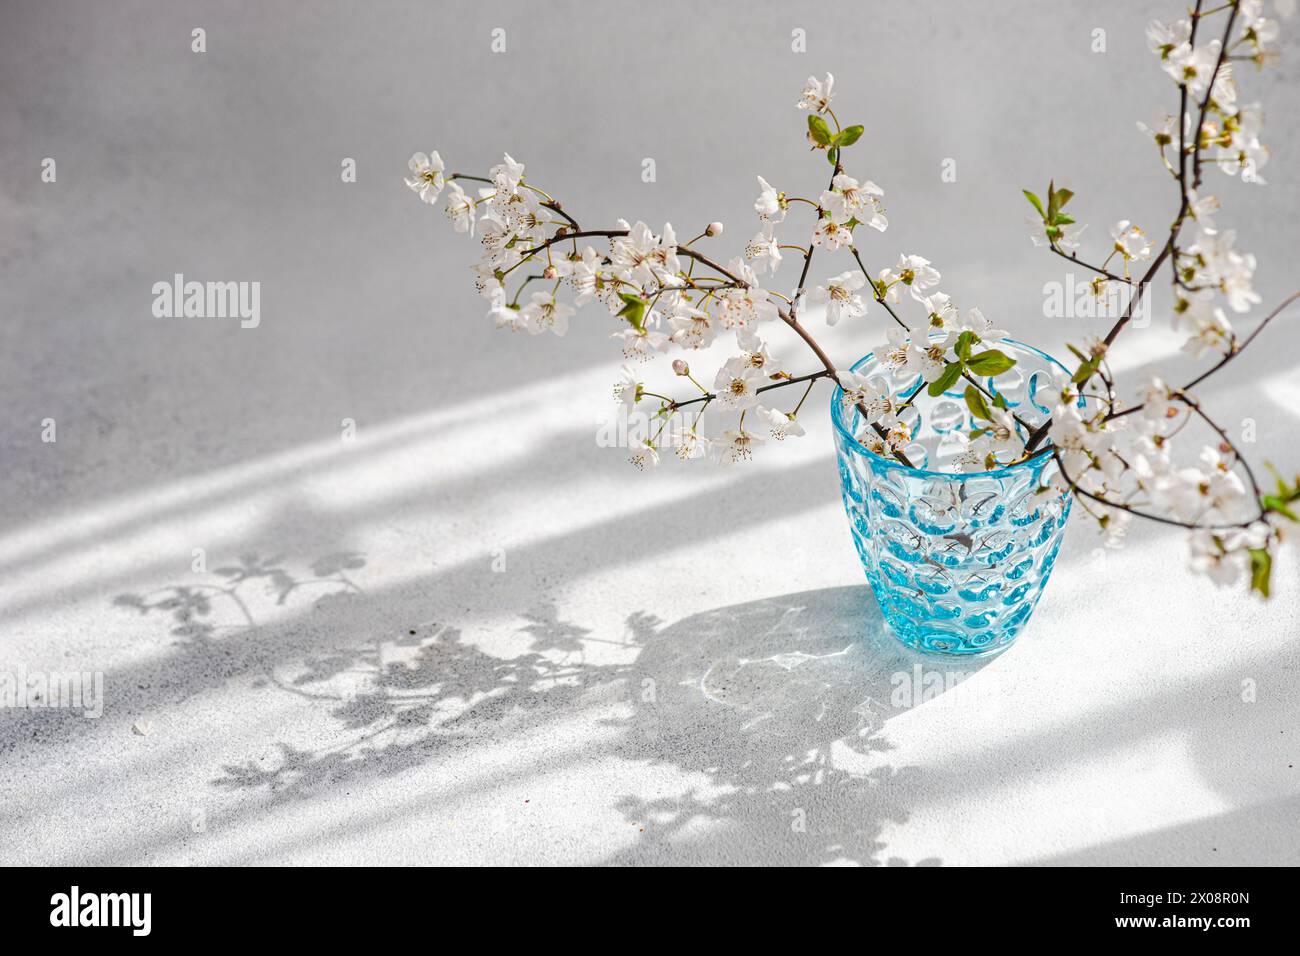 Branches de fleurs de cerisier gracieusement exposées dans un vase en verre bleu gaufré avec les ombres douces qu'elles projettent sur une surface blanche Banque D'Images